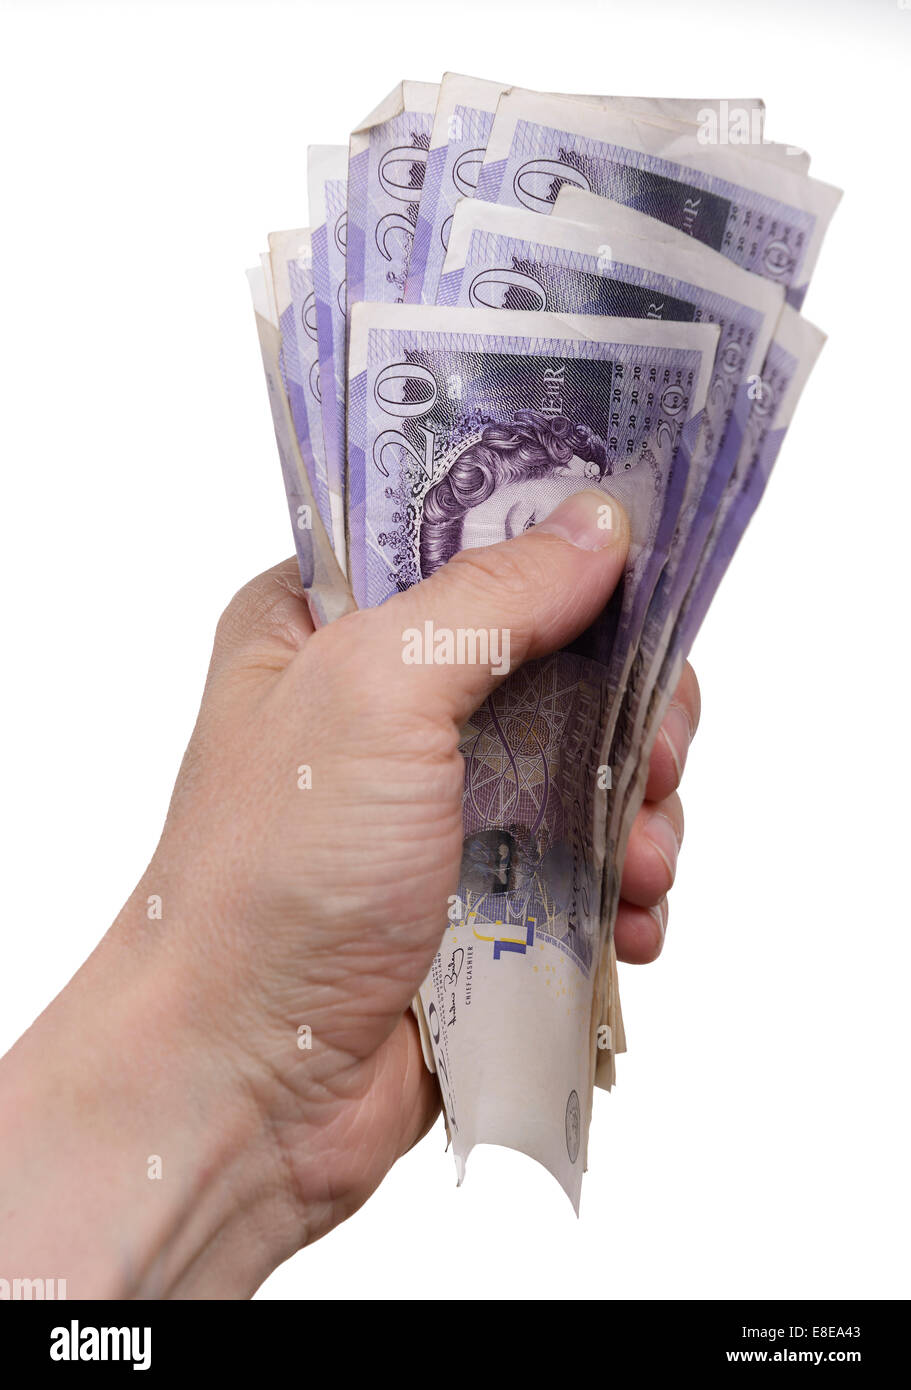 Mans hand holding a bundle of UK Twenty Pound notes Stock Photo